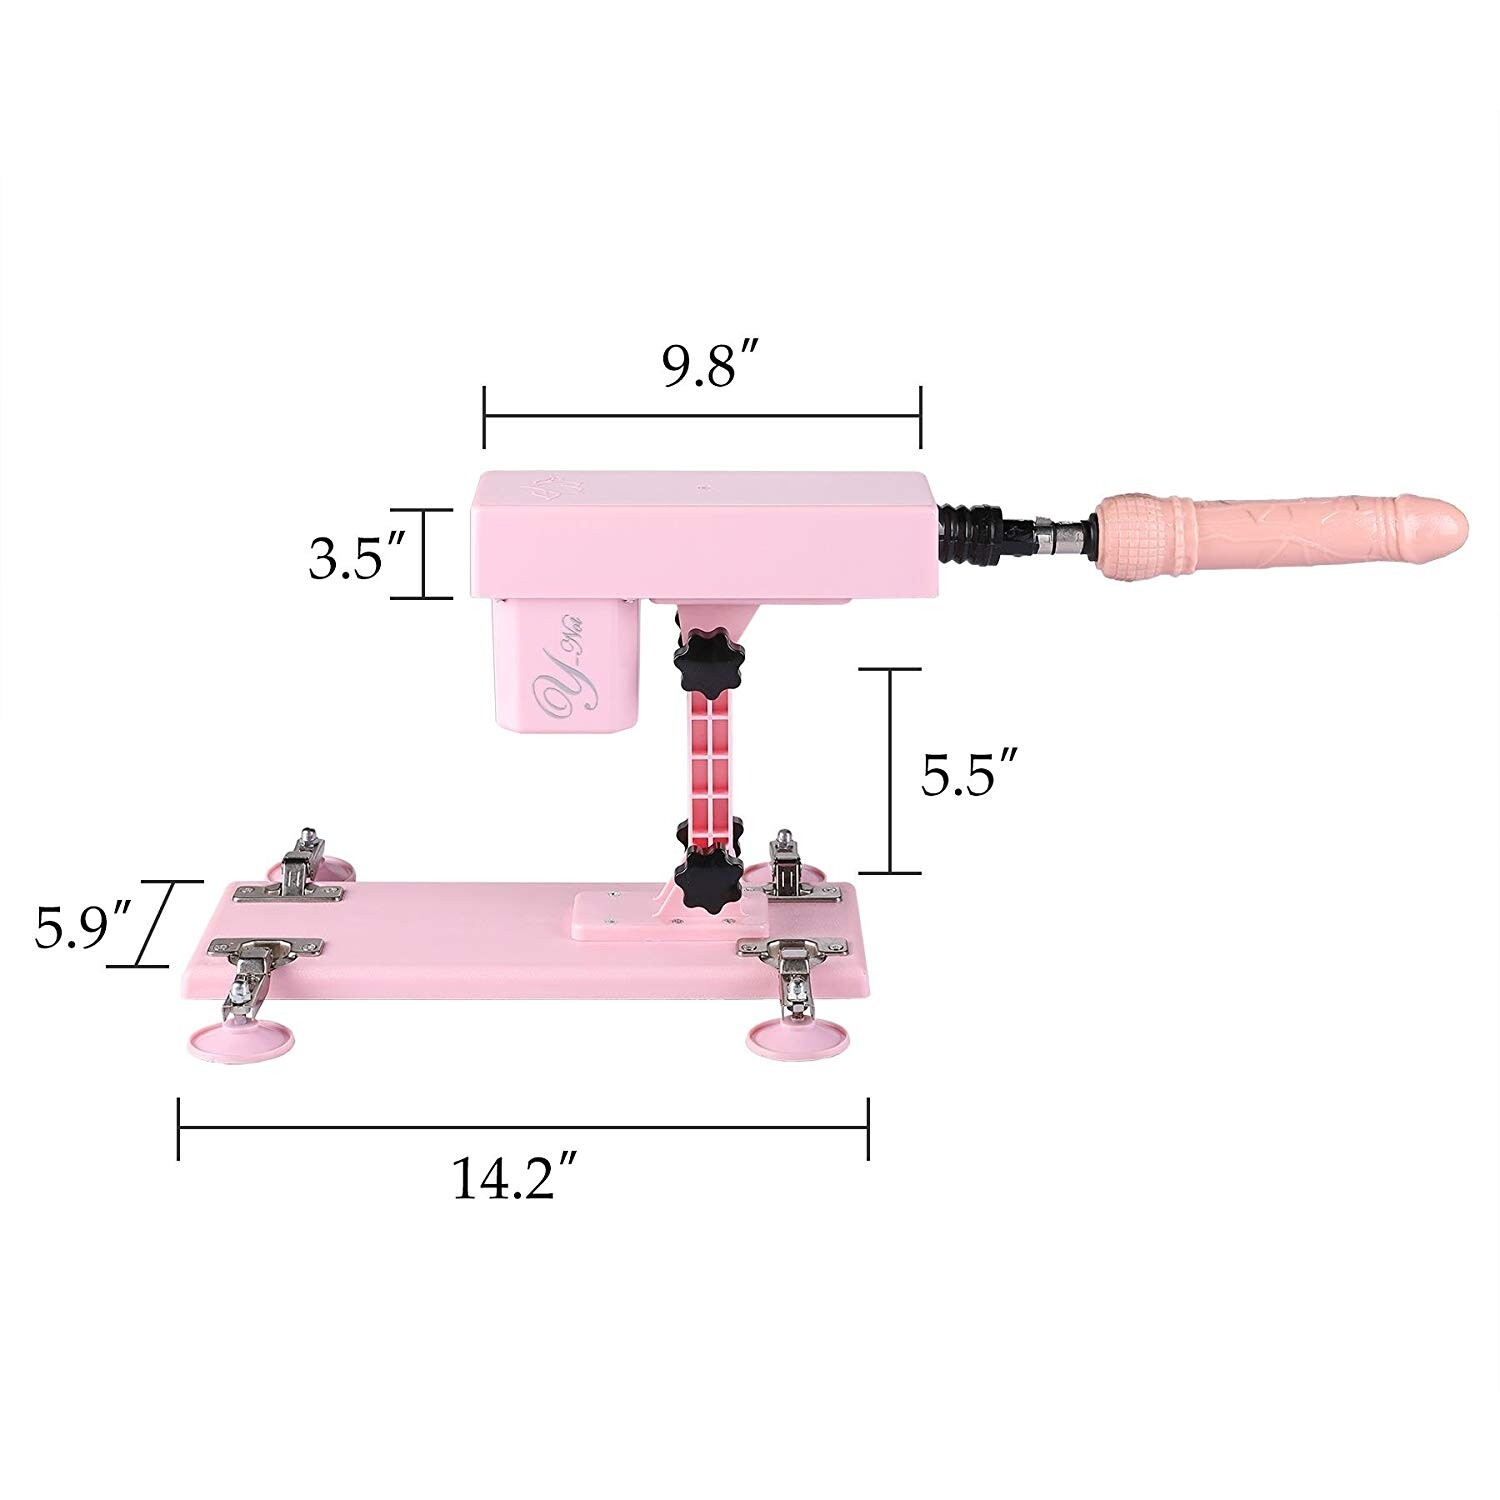 Mitragliatrice del sesso femminile con accessori Dildo 5PCS rosa